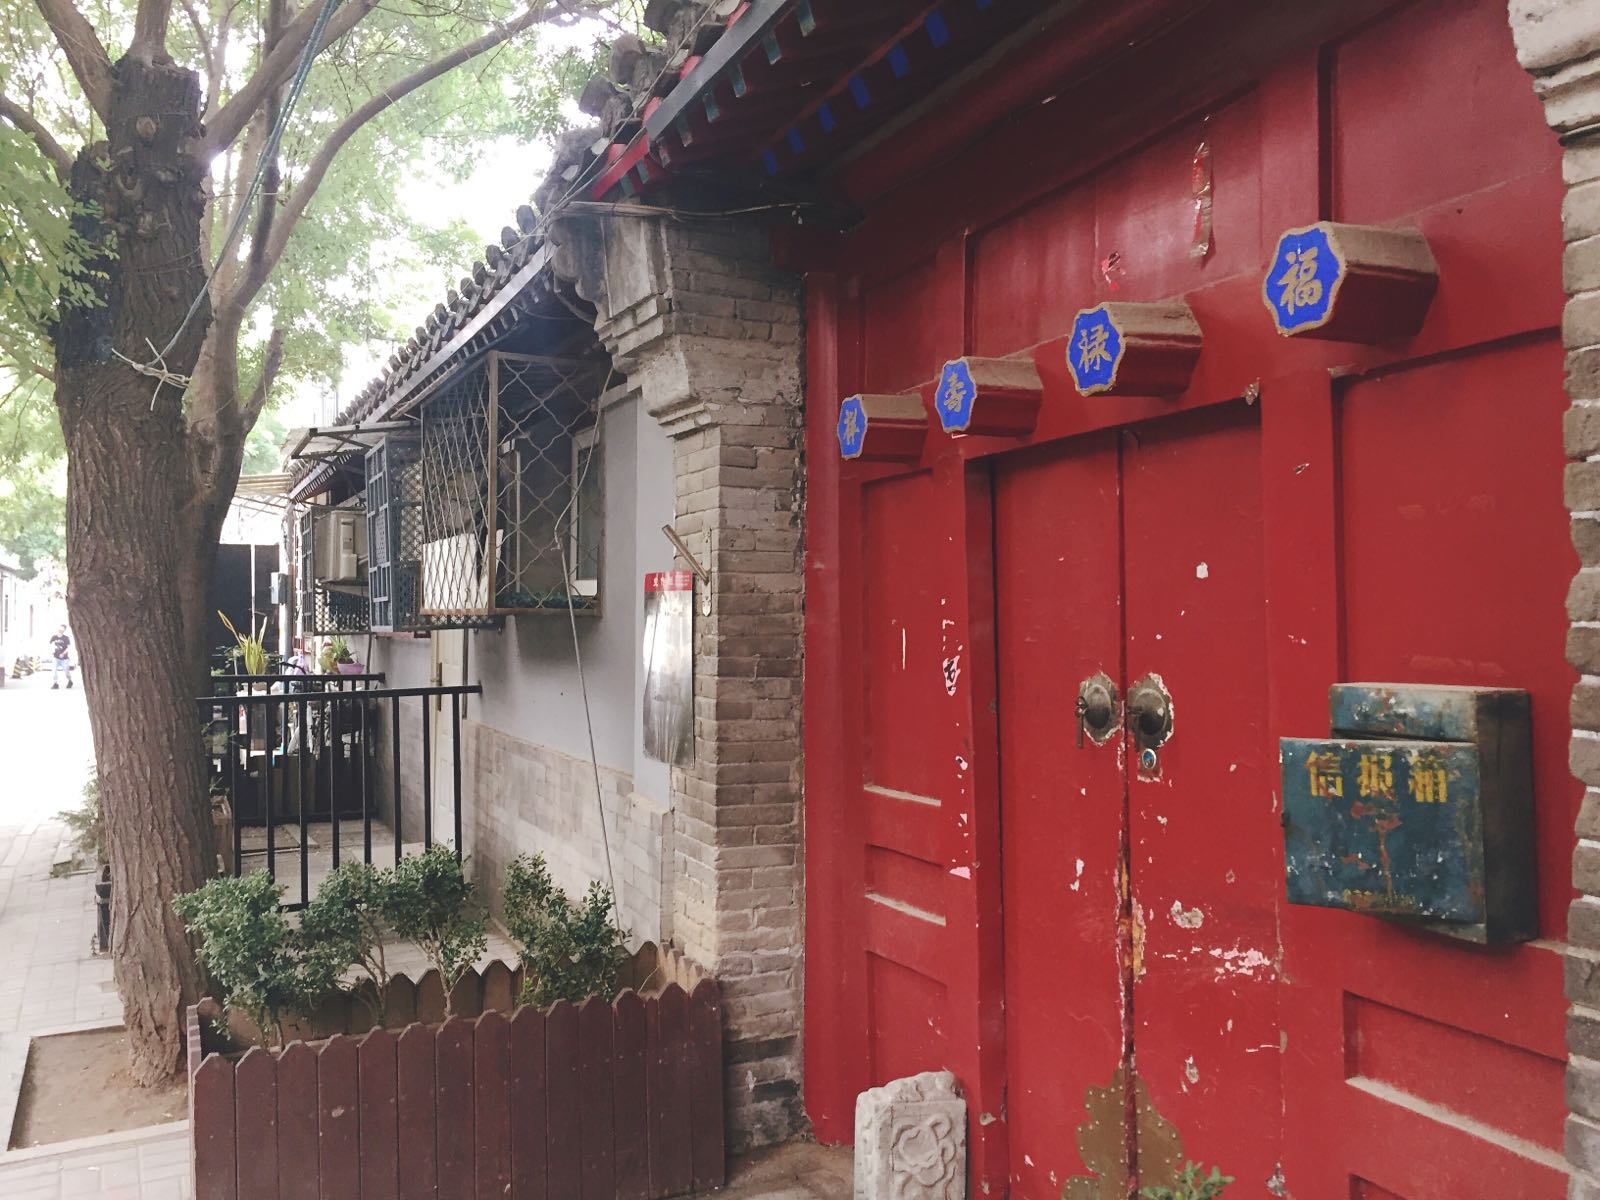 算是比较安静的一条北京胡同，很多民房能唤起小时候的记忆。走出头就到了南